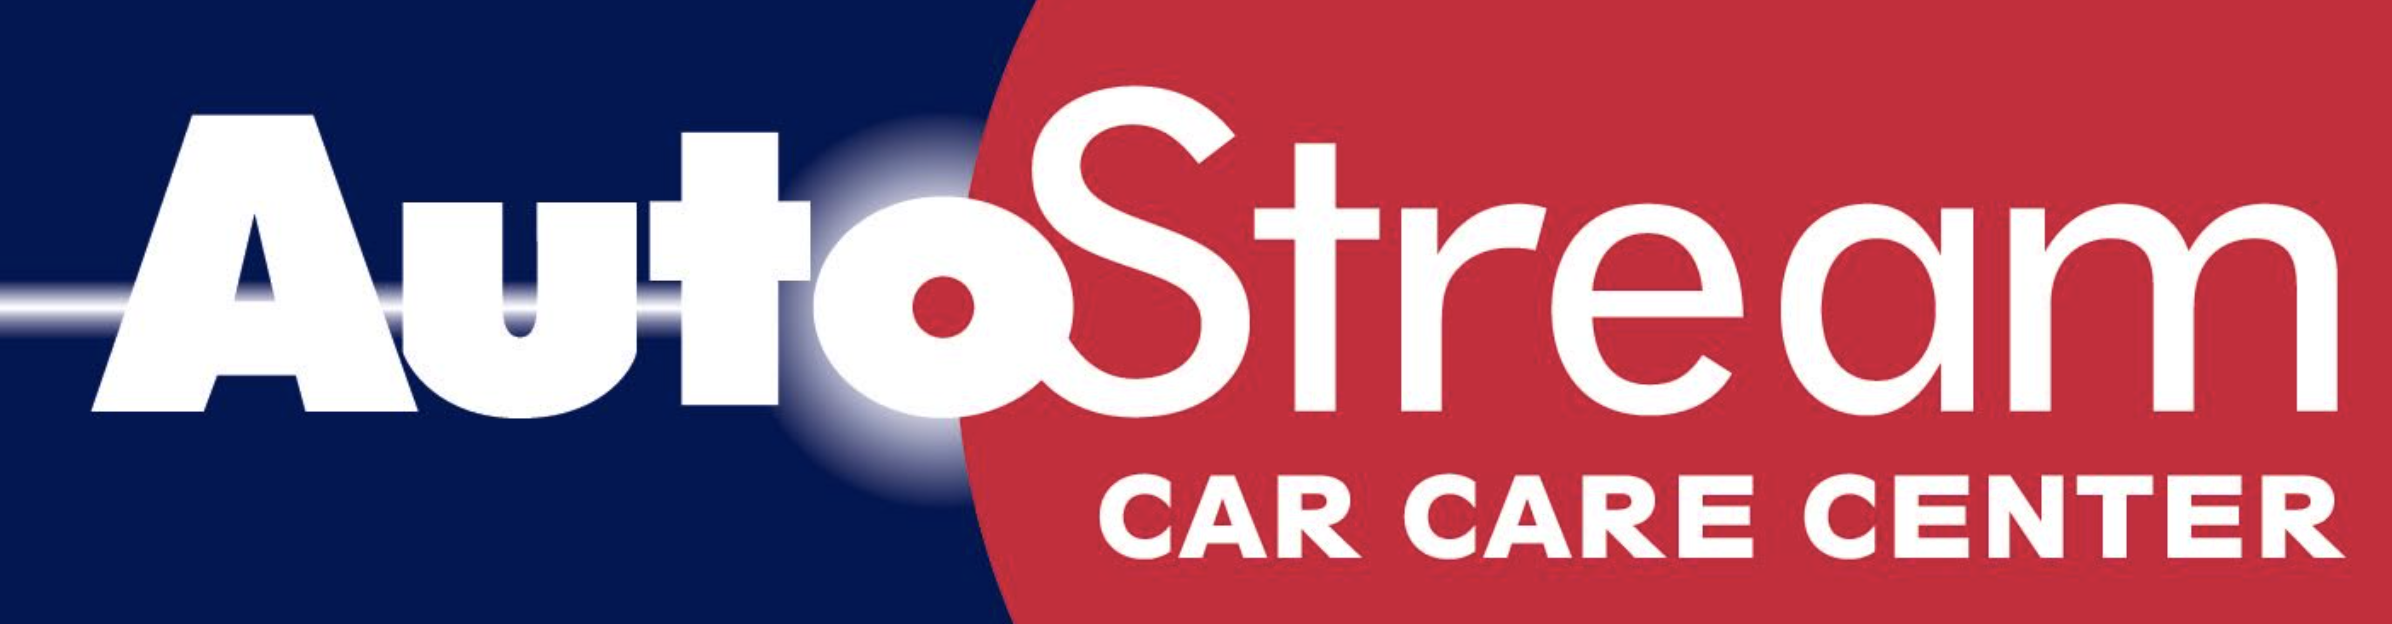 Centro de cuidado de automóviles AutoStream (Nivel 2)